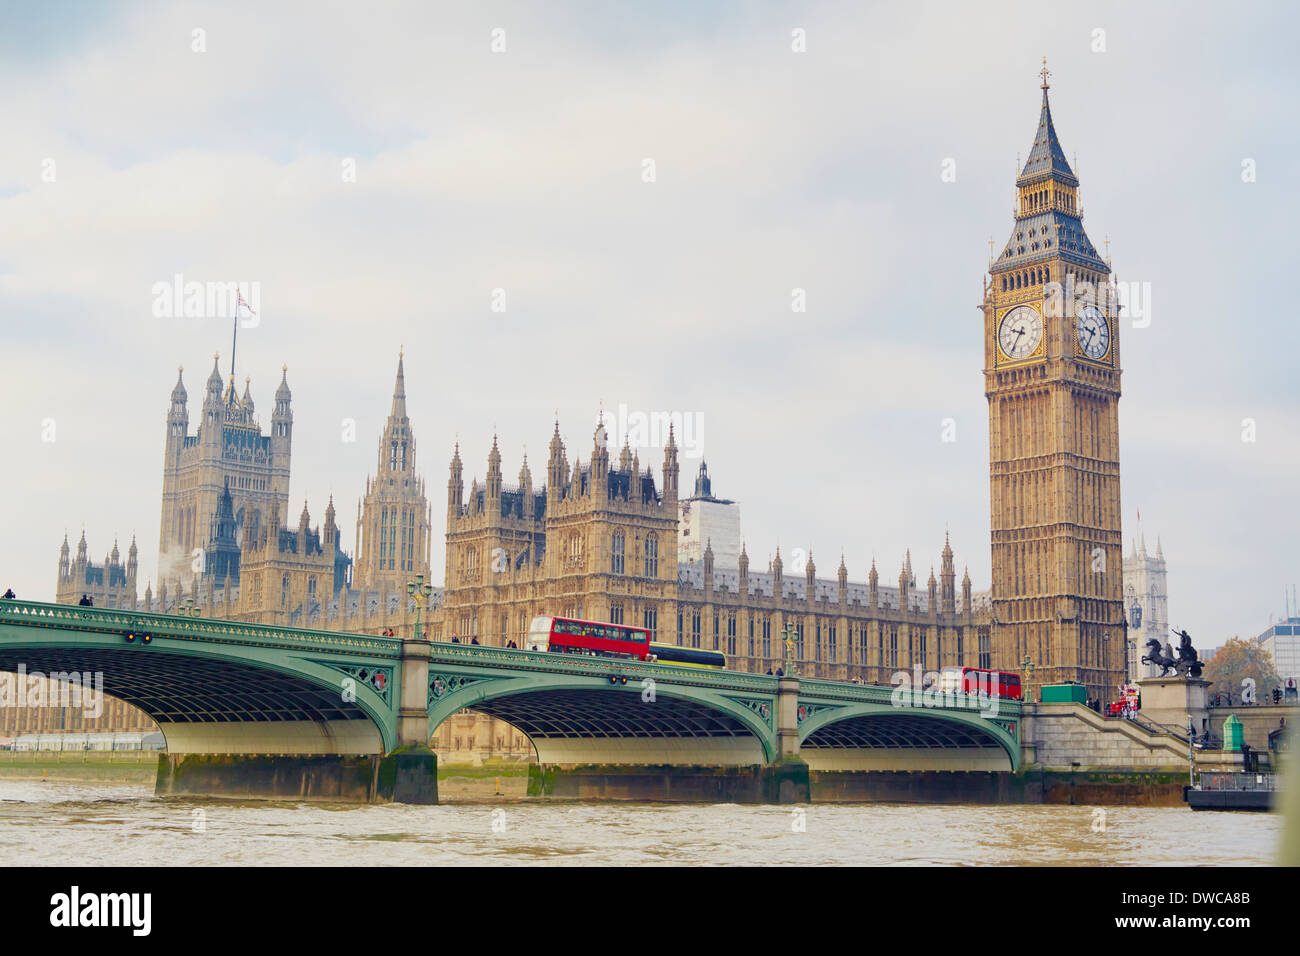 Vista del puente de Westminster y las Casas del Parlamento, London, UK Foto de stock